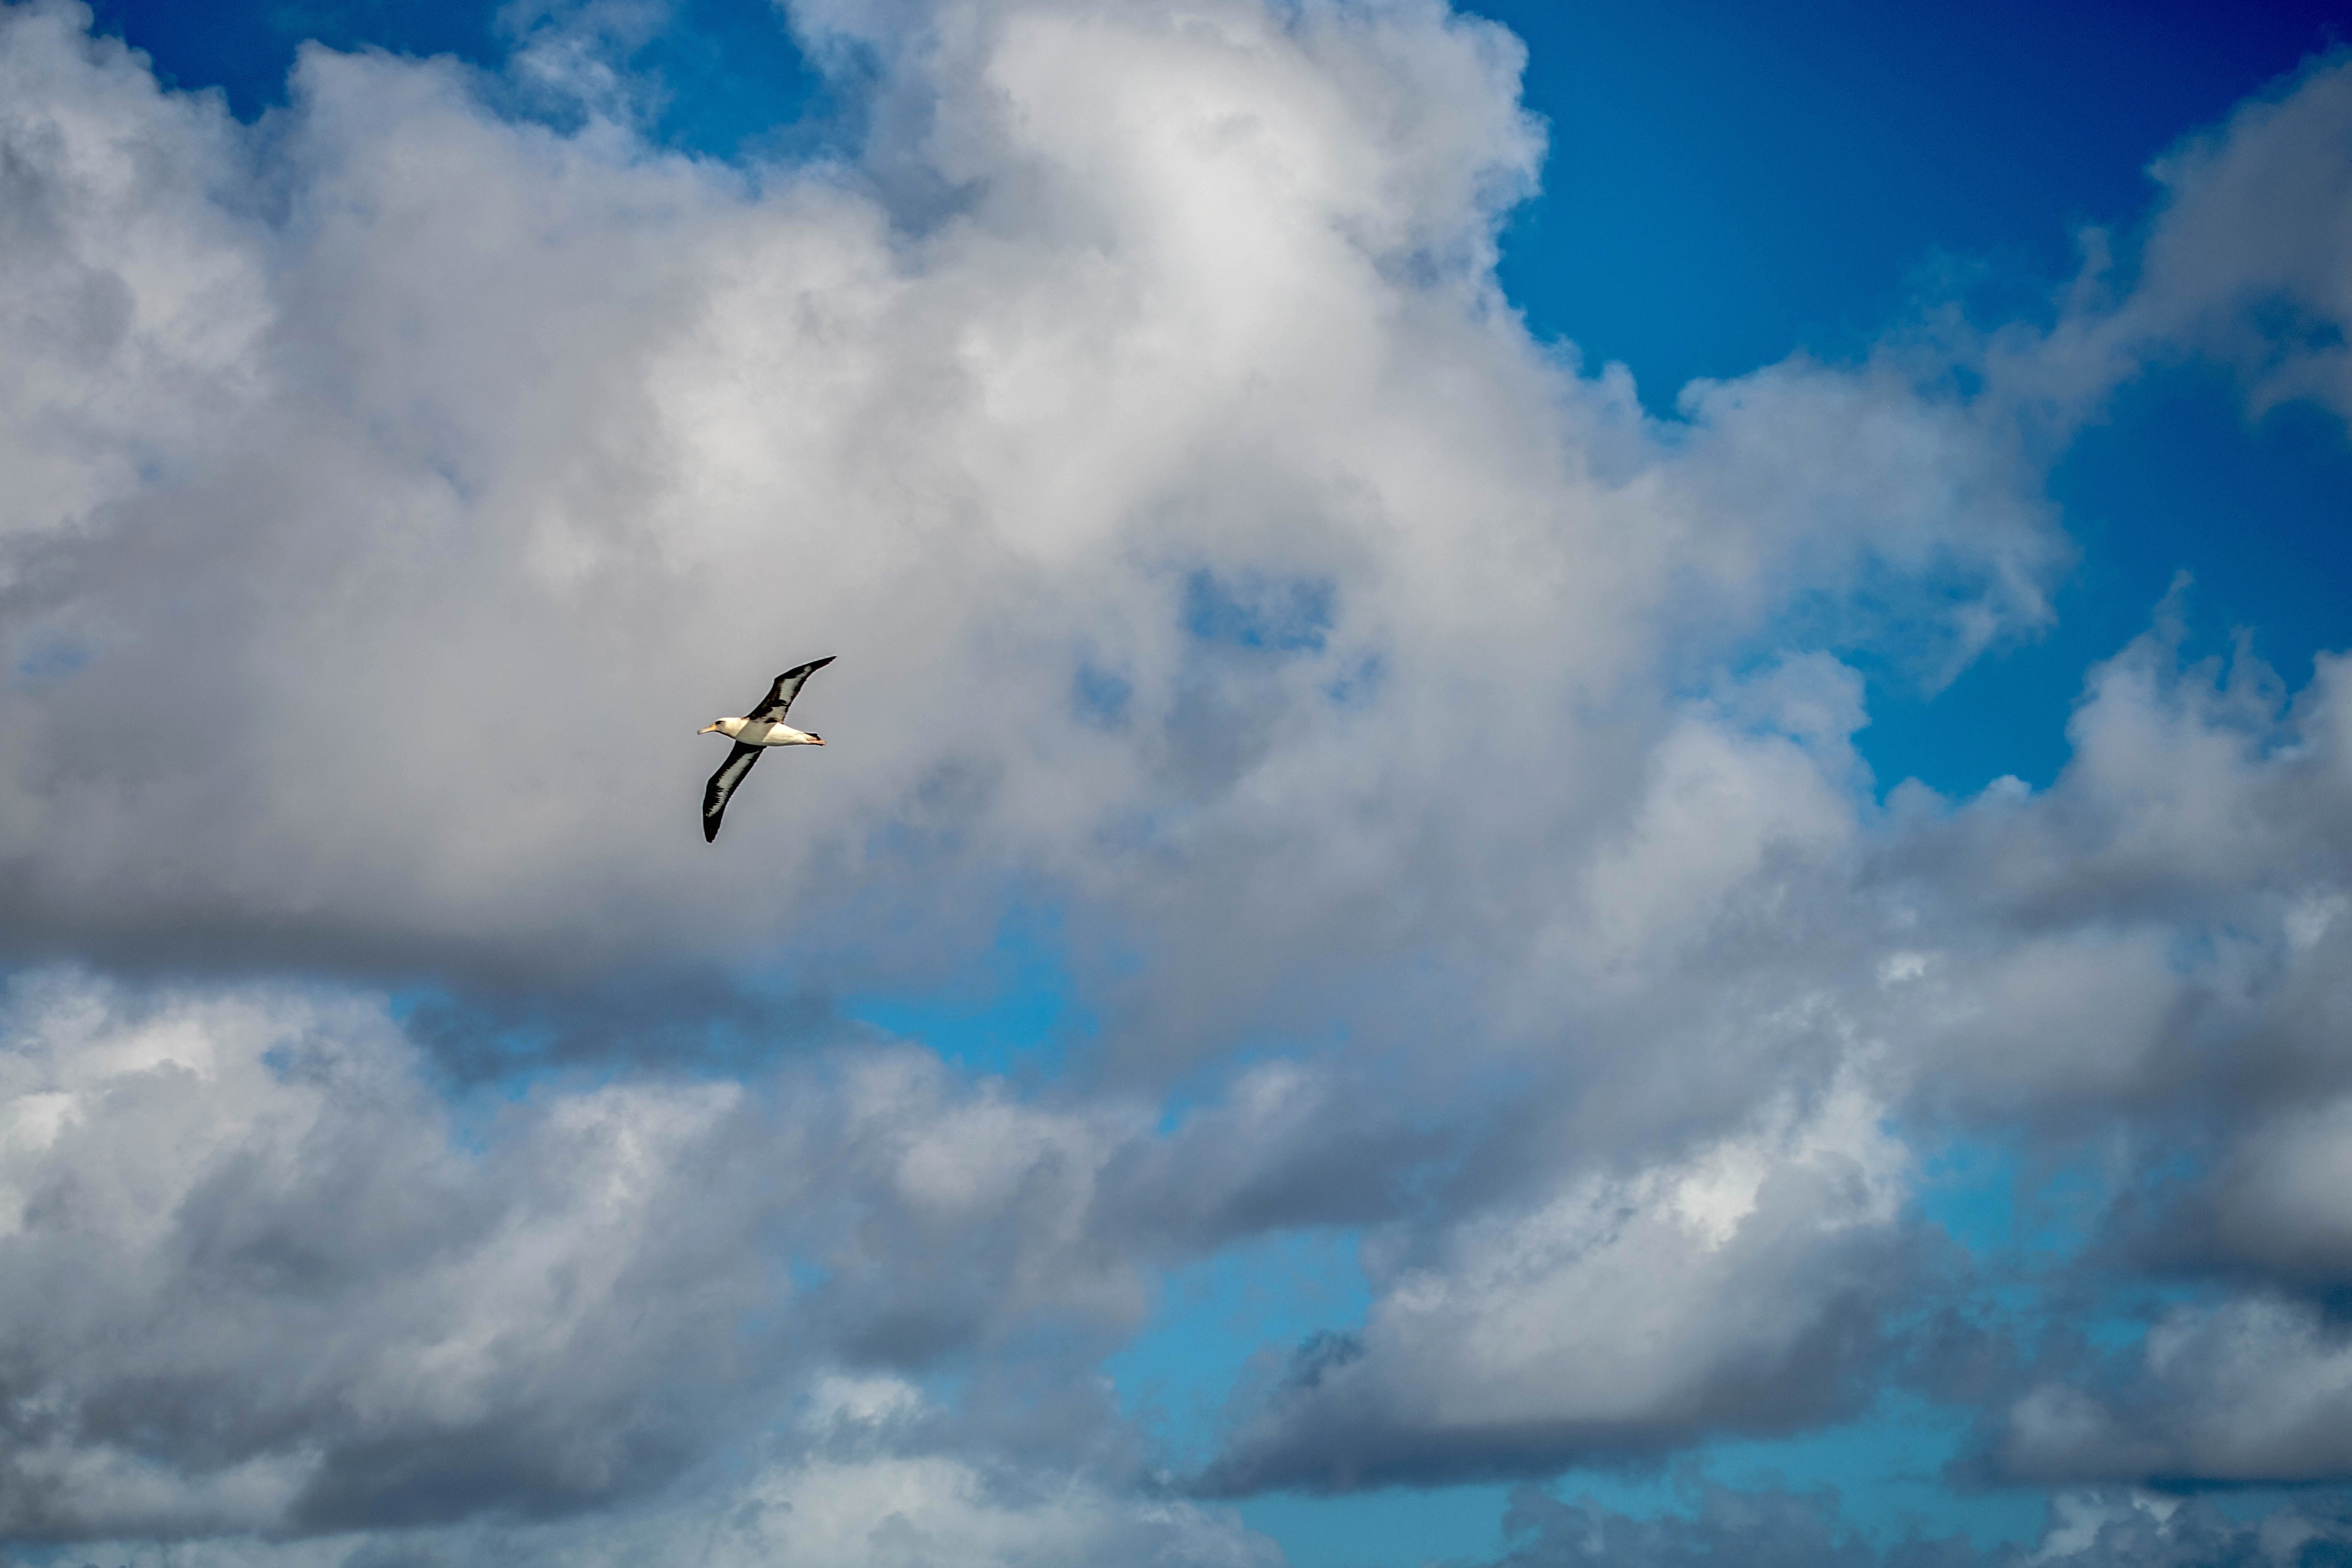 Kostenlose Bild: Vogel, blauer himmel, wolke, luft, wind, landschaft